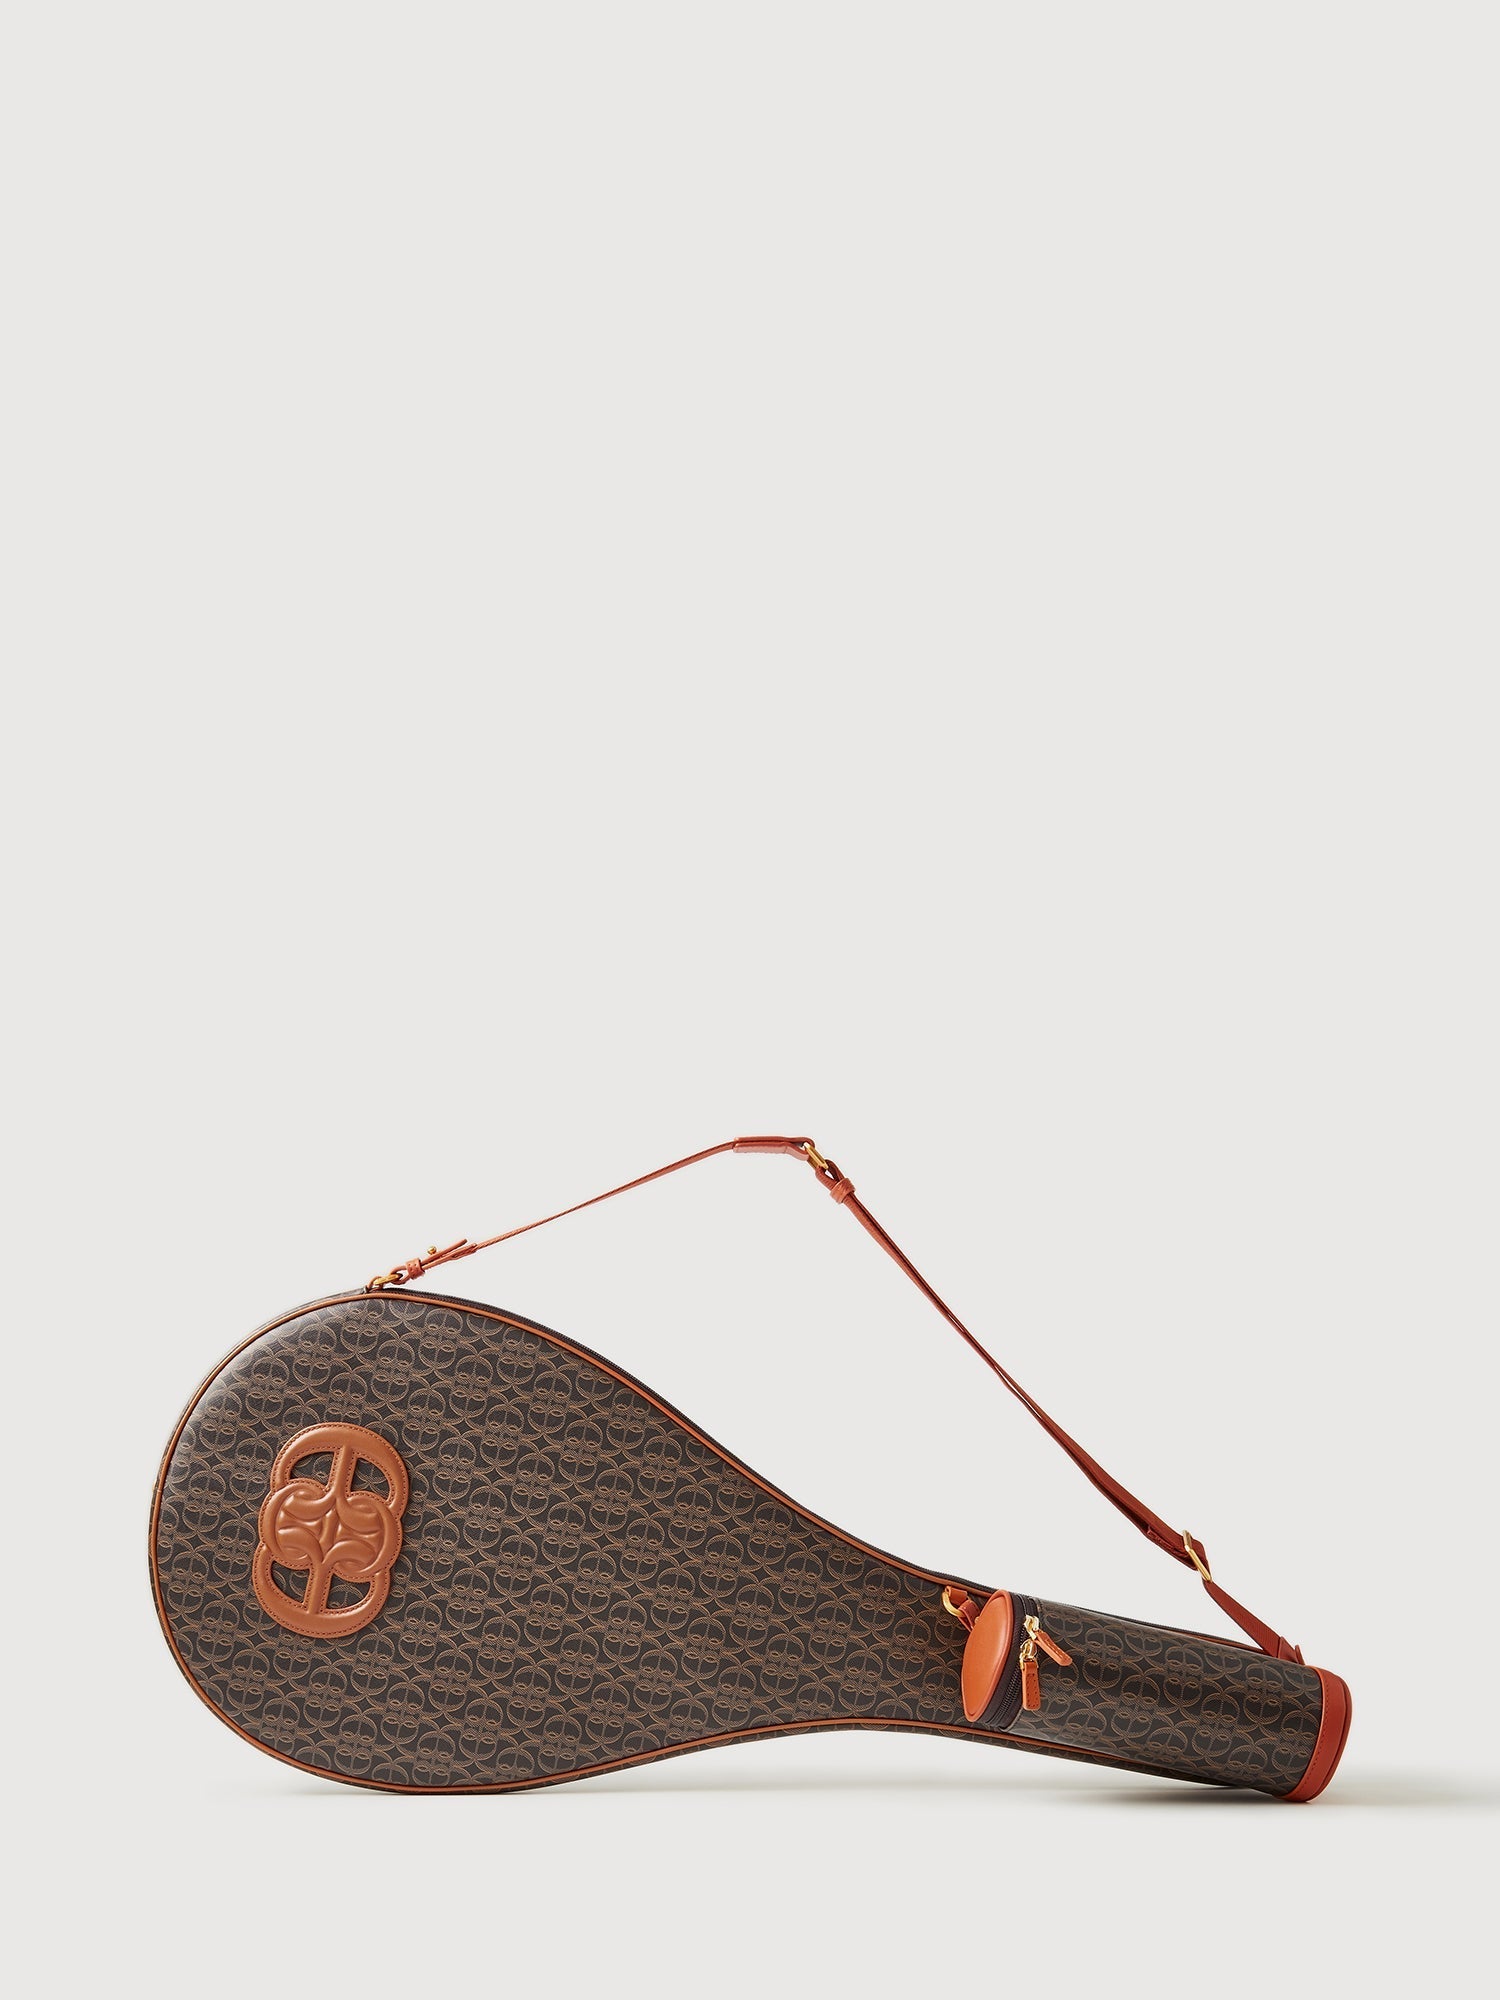 Louis Vuitton vintage tennis racquet cover